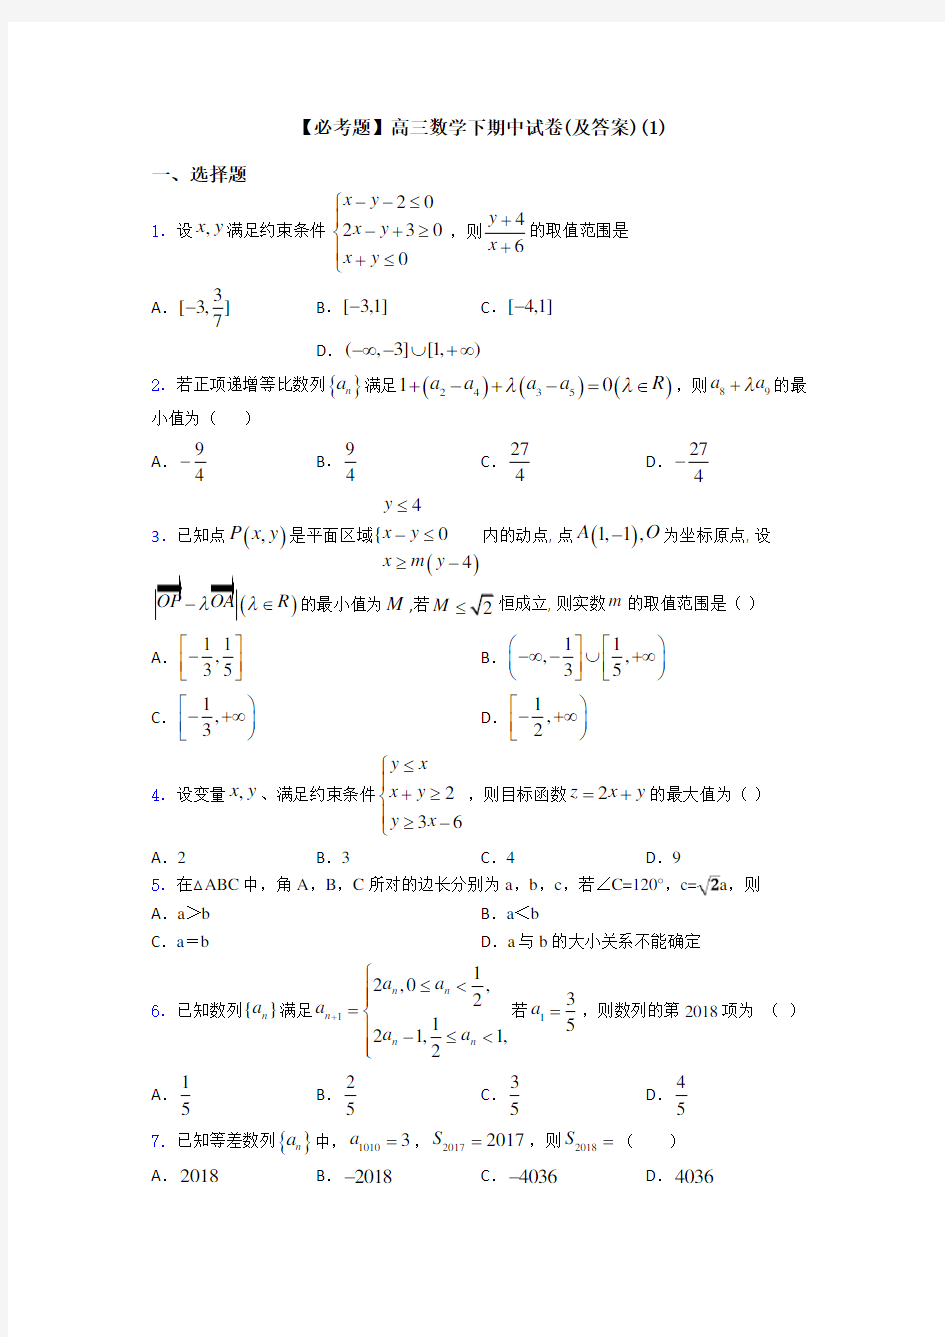 【必考题】高三数学下期中试卷(及答案)(1)